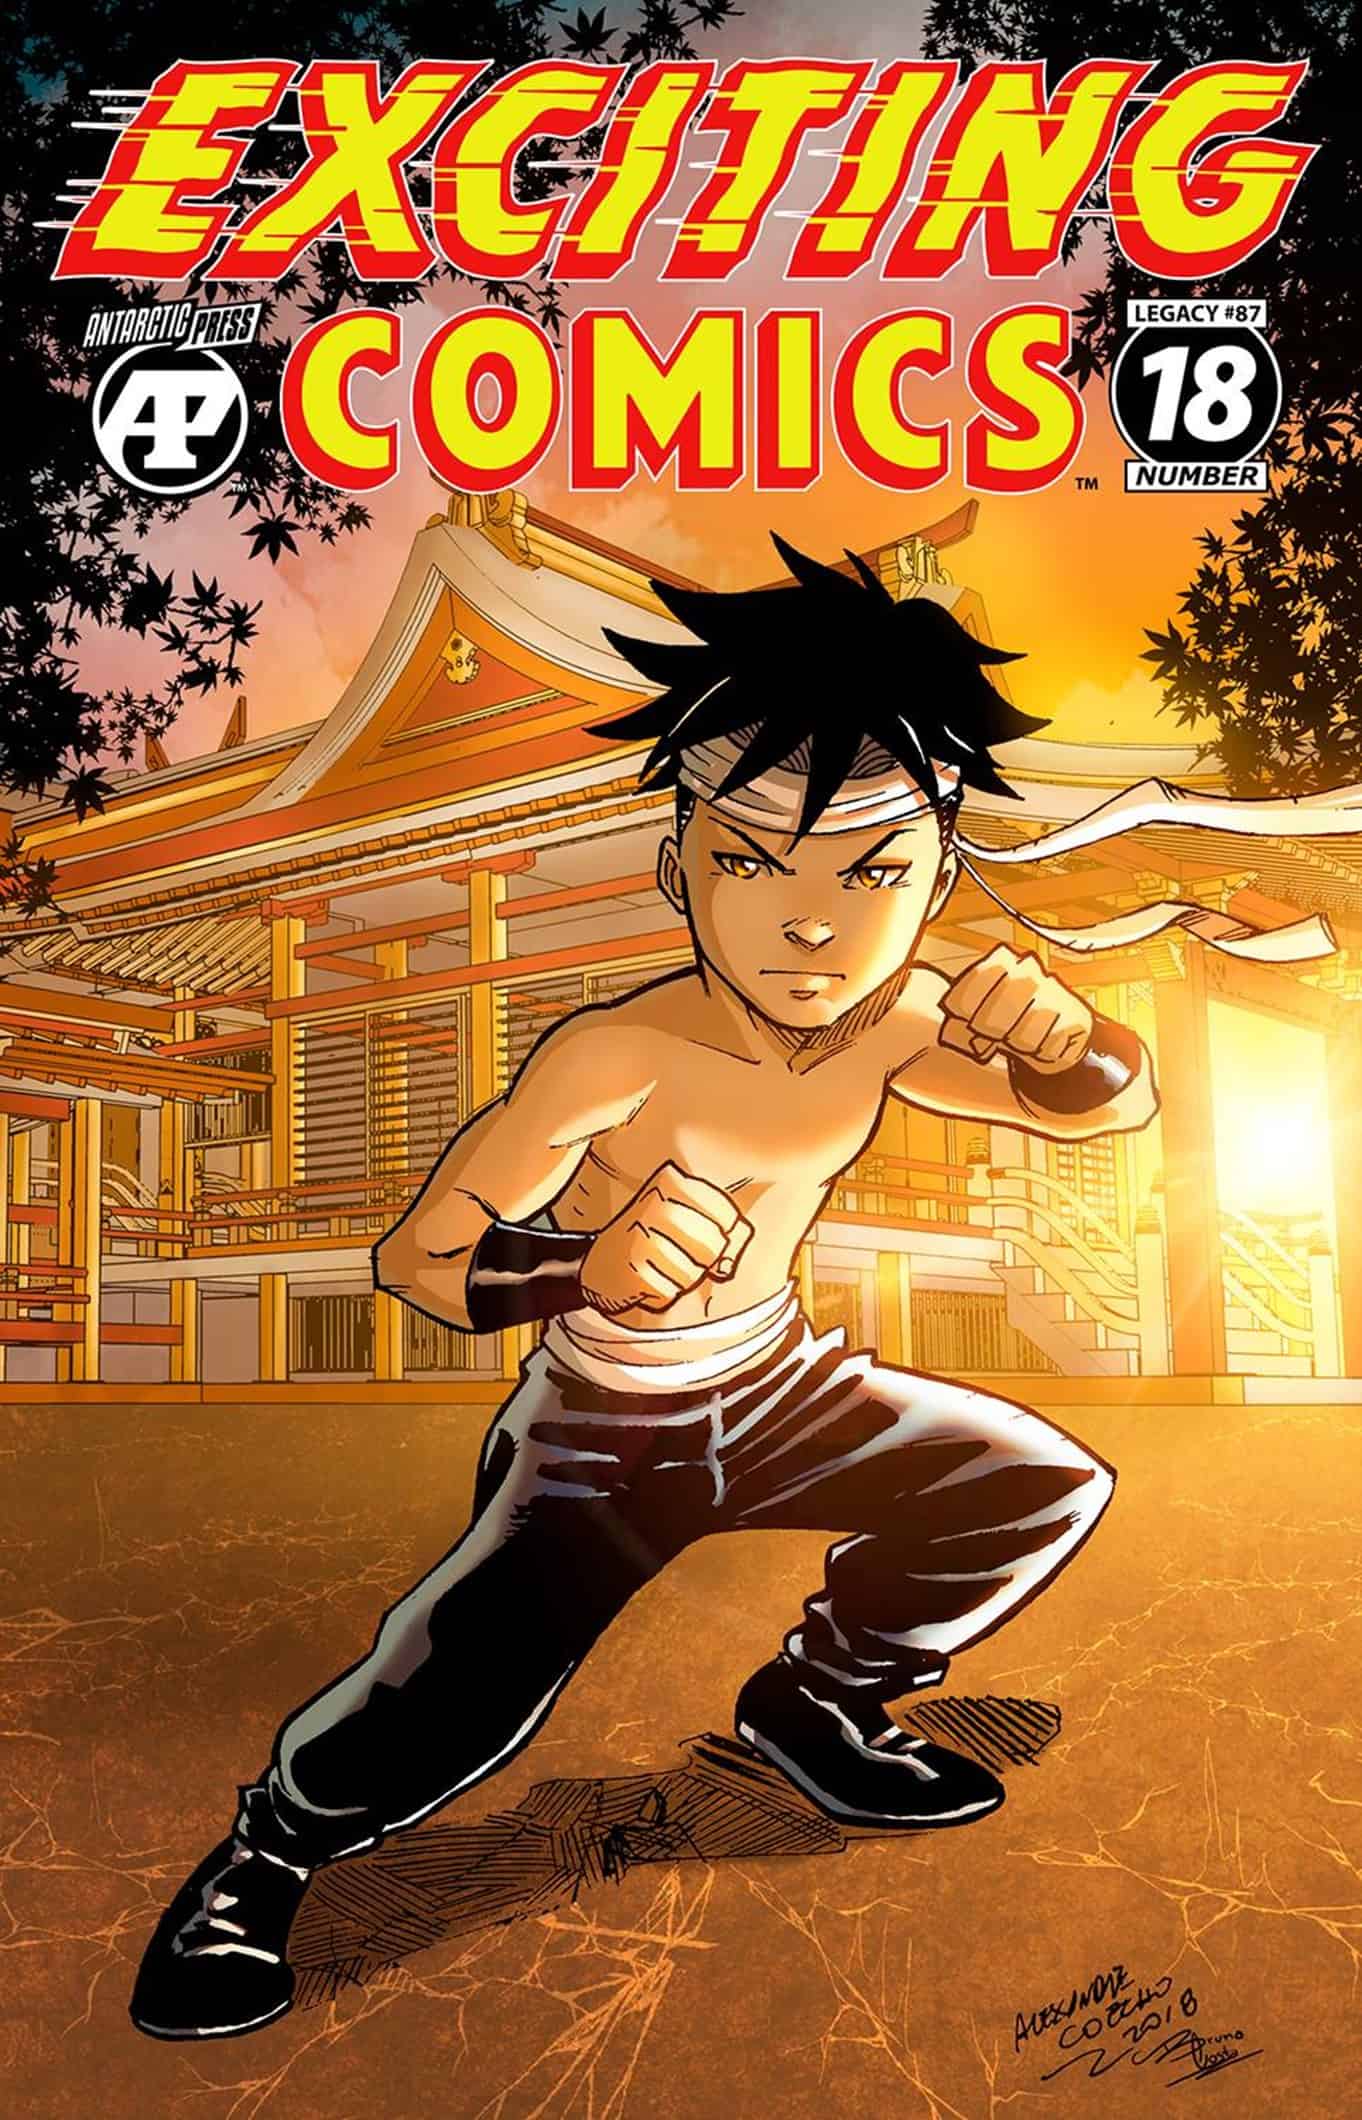 Comics18.net